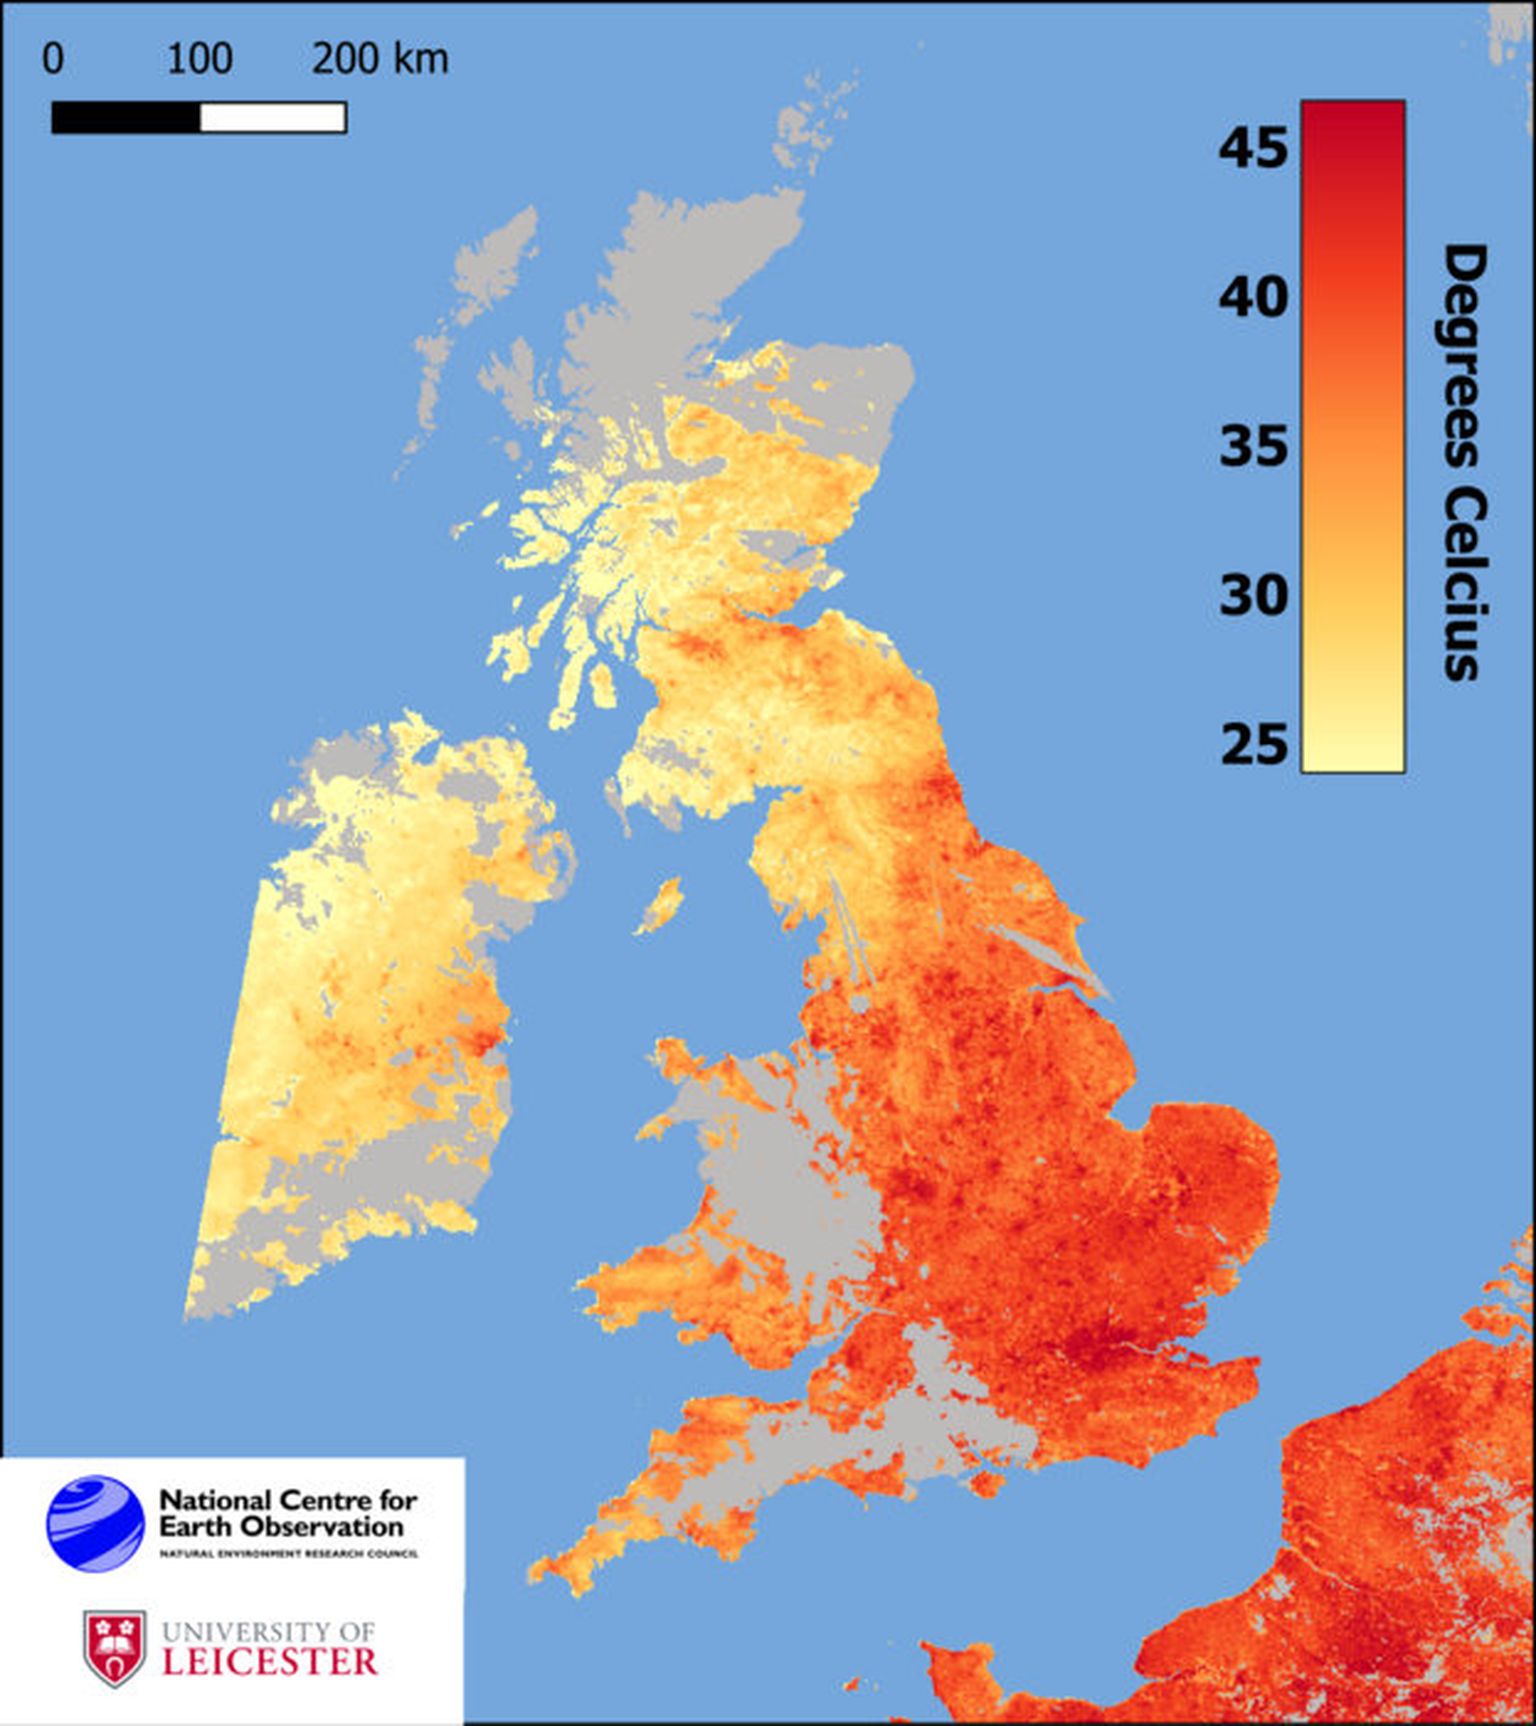 Kliimaeitajad levitavad infot, justkui oleksid punased toonid ilmakaartidel sinna pandud paanika tekitamiseks. Pilt on illustreeriv.